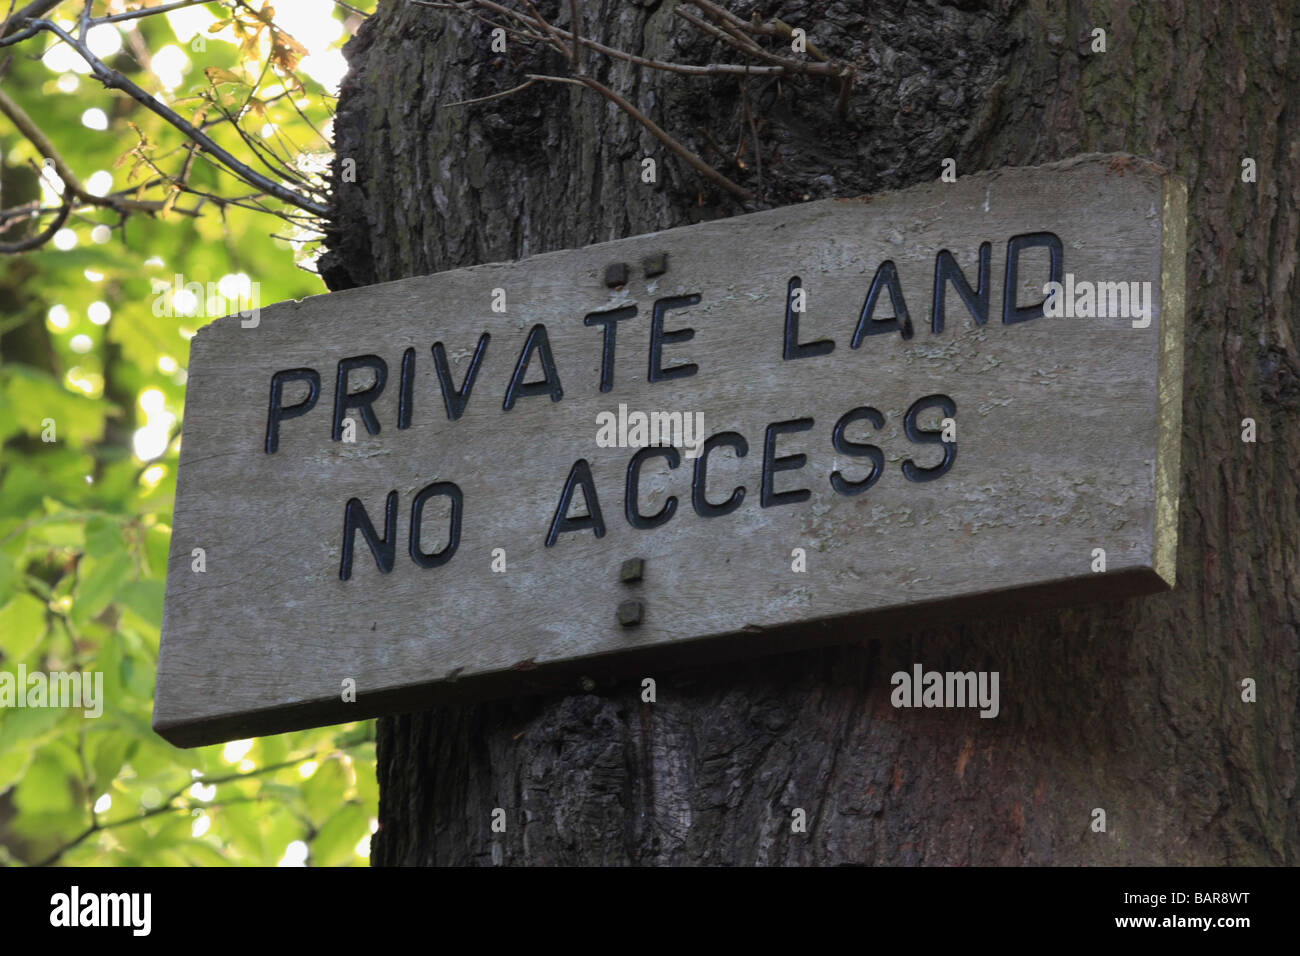 En bois d'un terrain privé "aucun accès" à un arbre fixe signe Banque D'Images